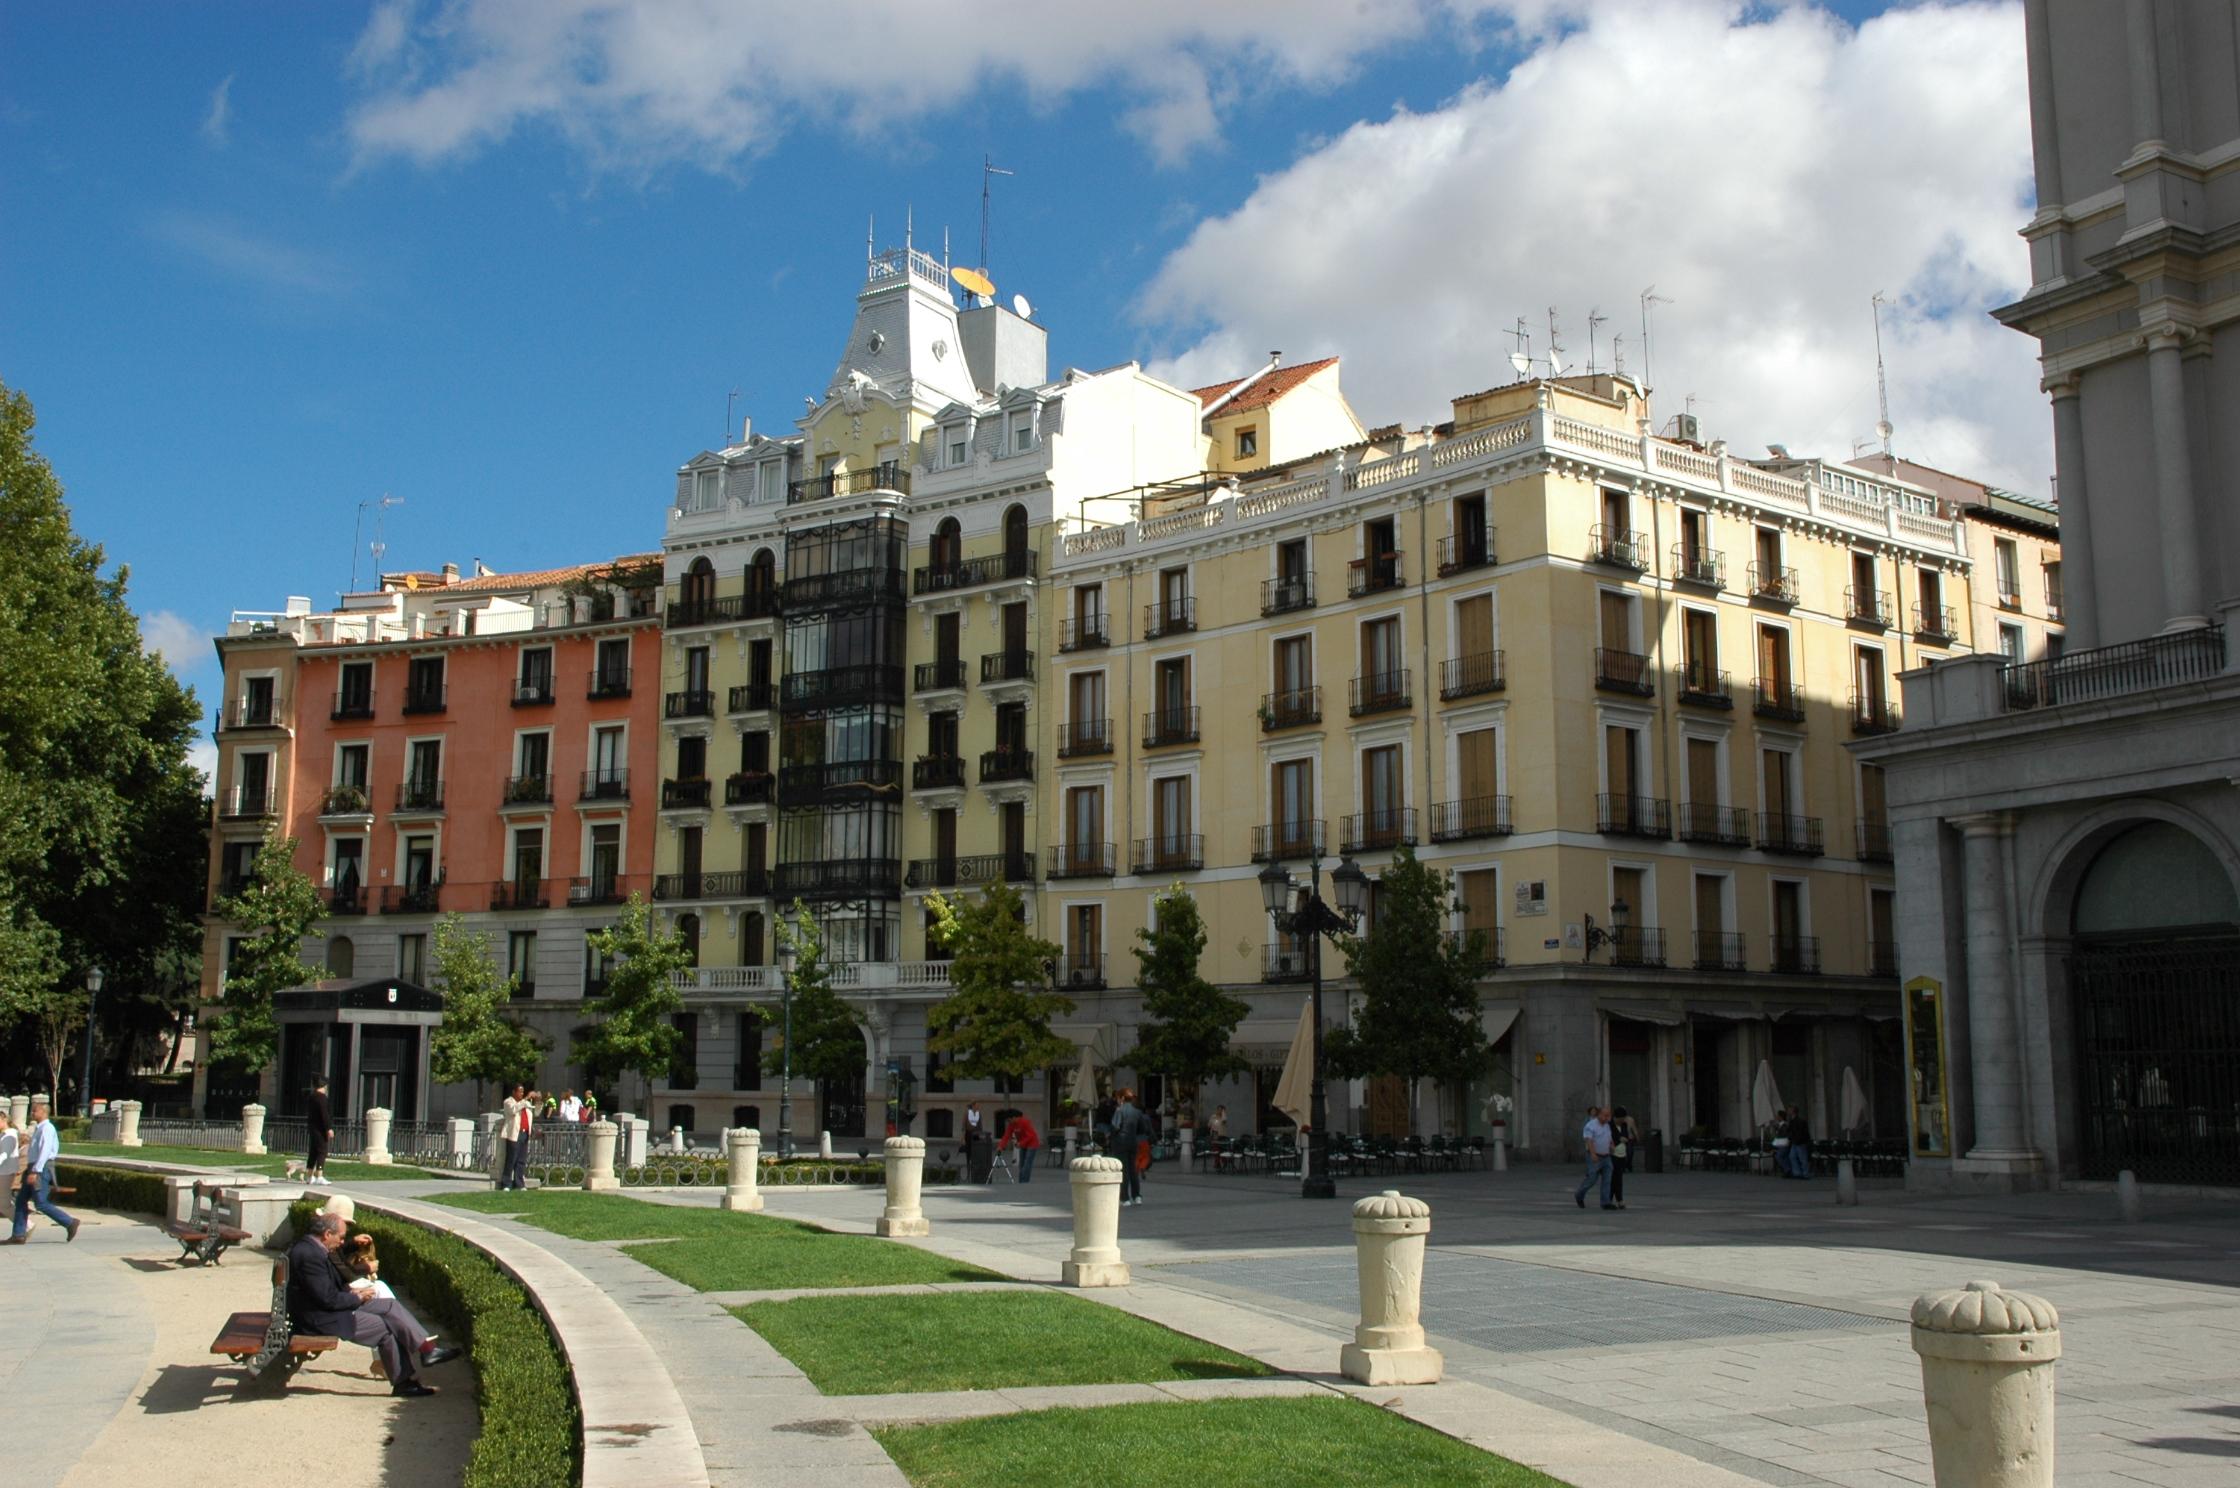 Μαδρίτη - Πλατεία Οριέντε6d5